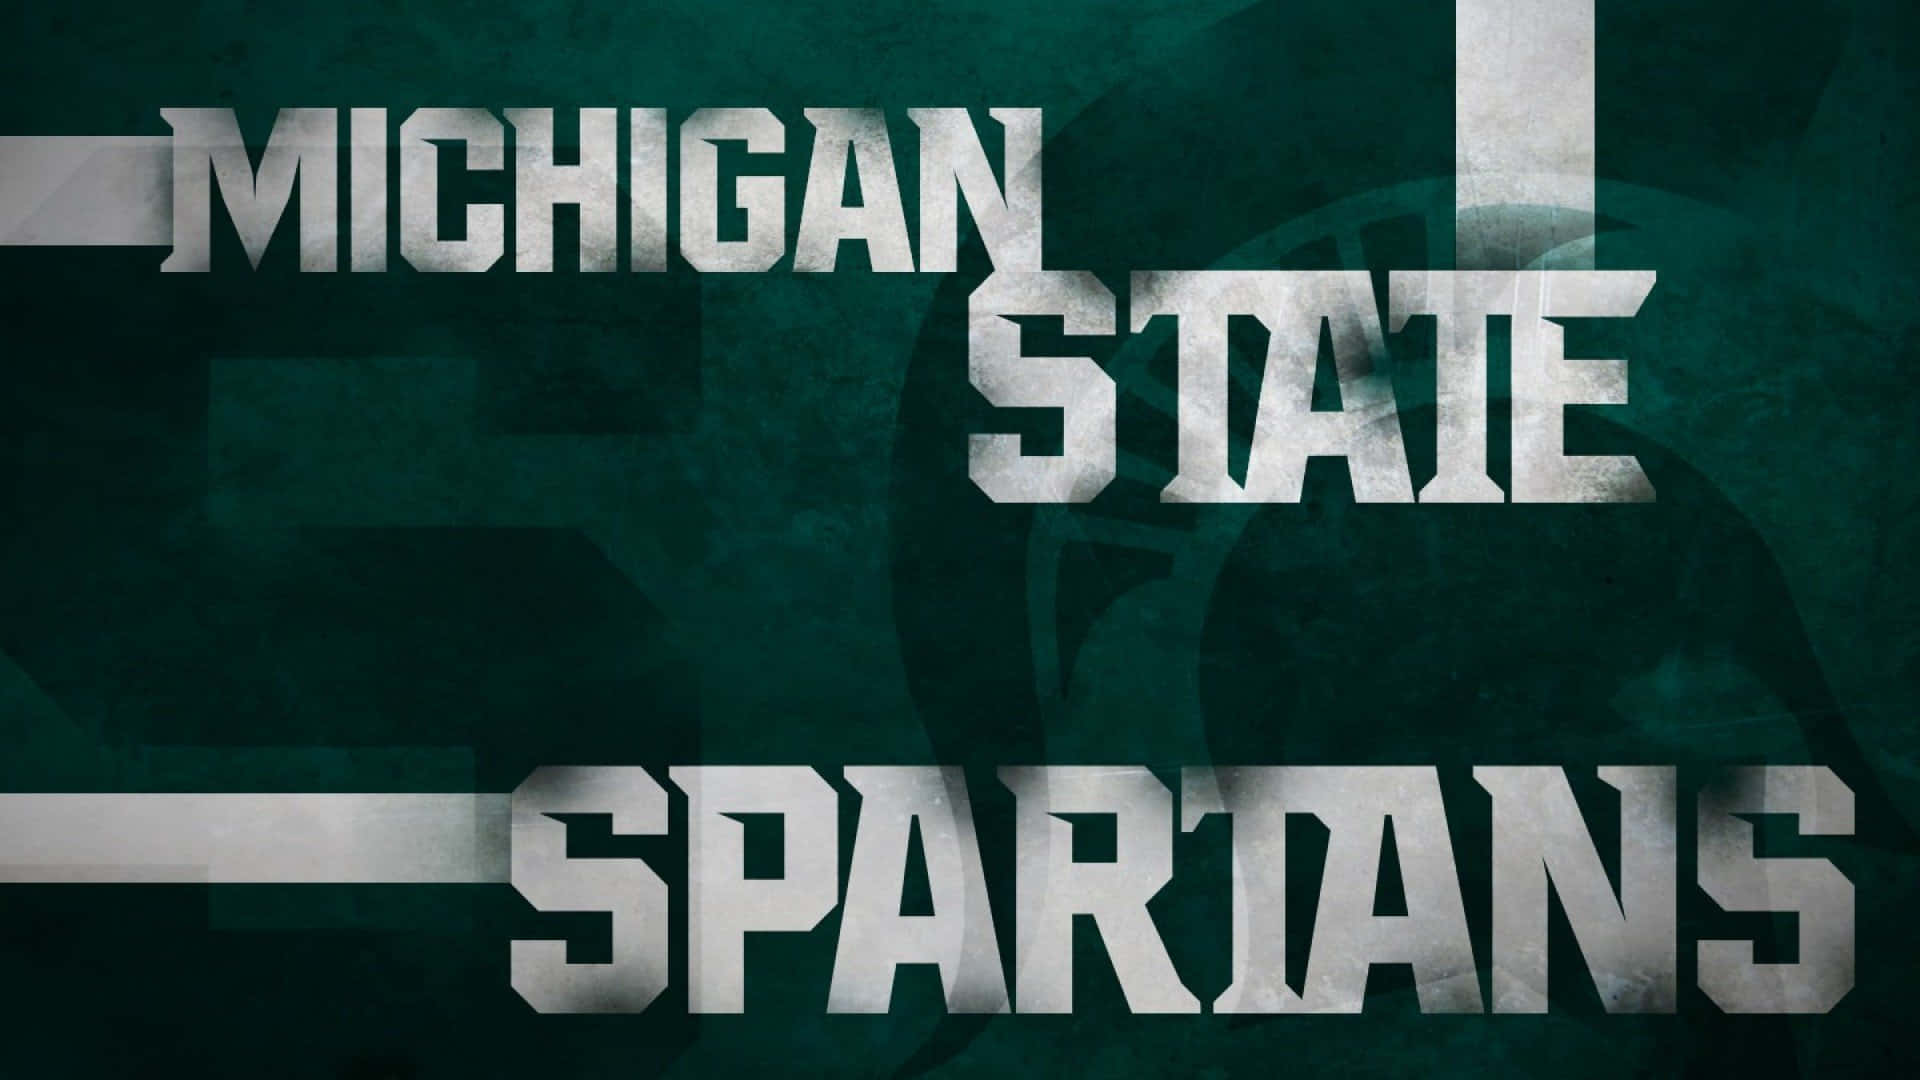 Michiganstate Spartans Text Auf Grünem Hintergrund Wallpaper